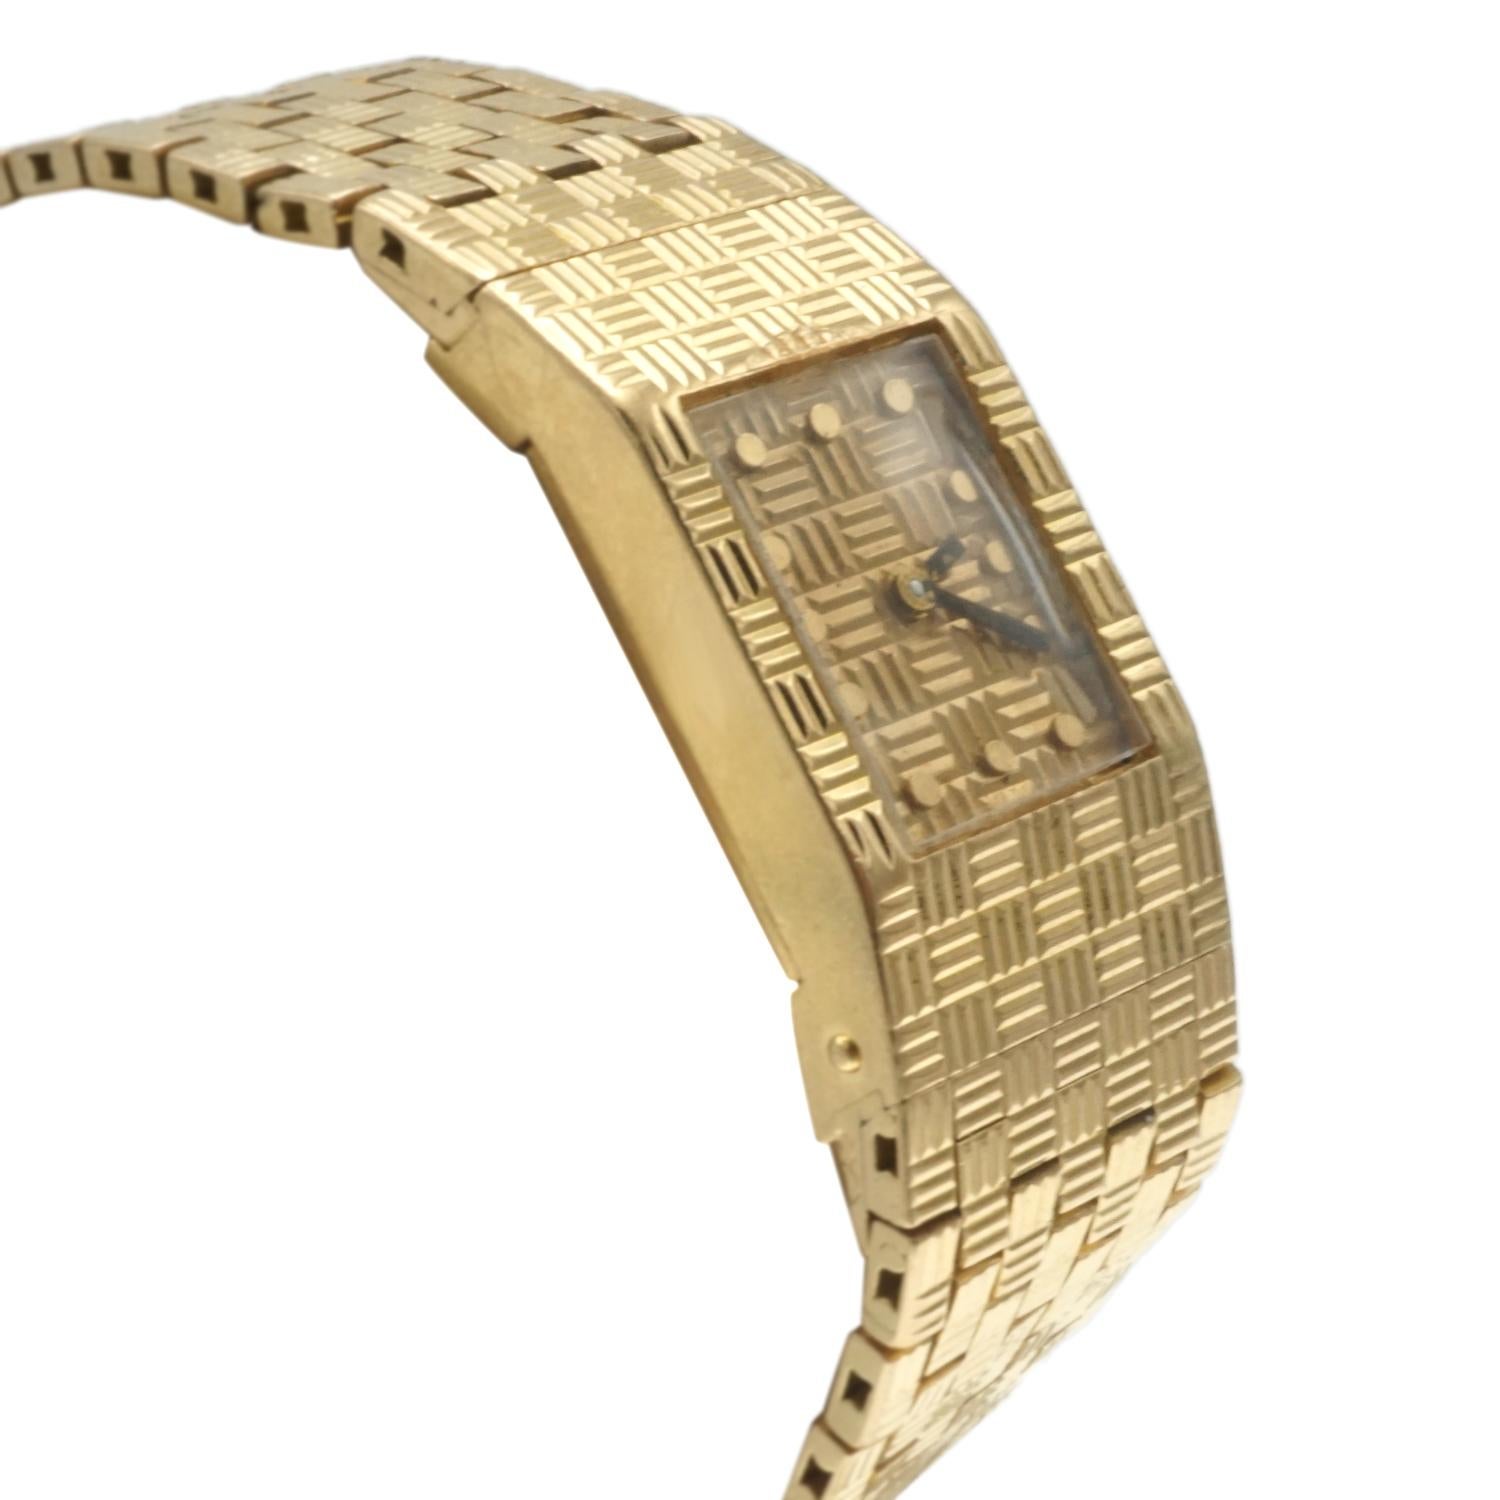 Montre-bracelet et bracelet en or jaune 18 carats.  Mesure de la longueur totale  L 7